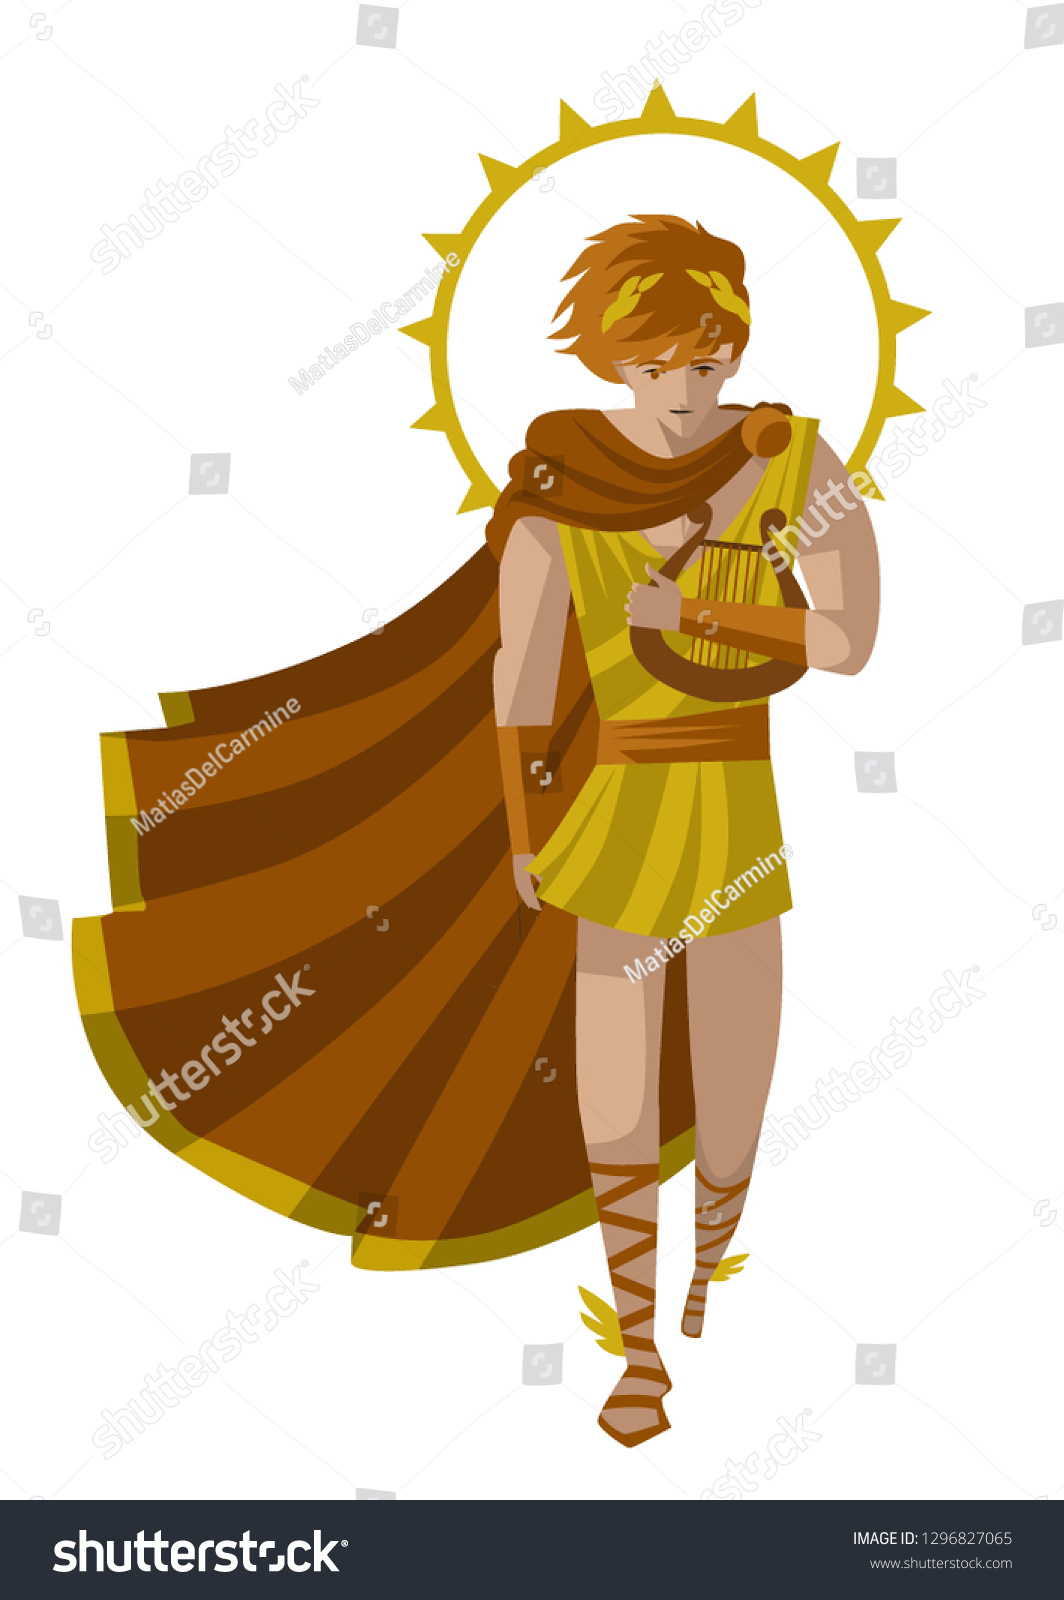 Apollo Sun Greek Mythology God: стоковая векторная графика (без лицензионны...